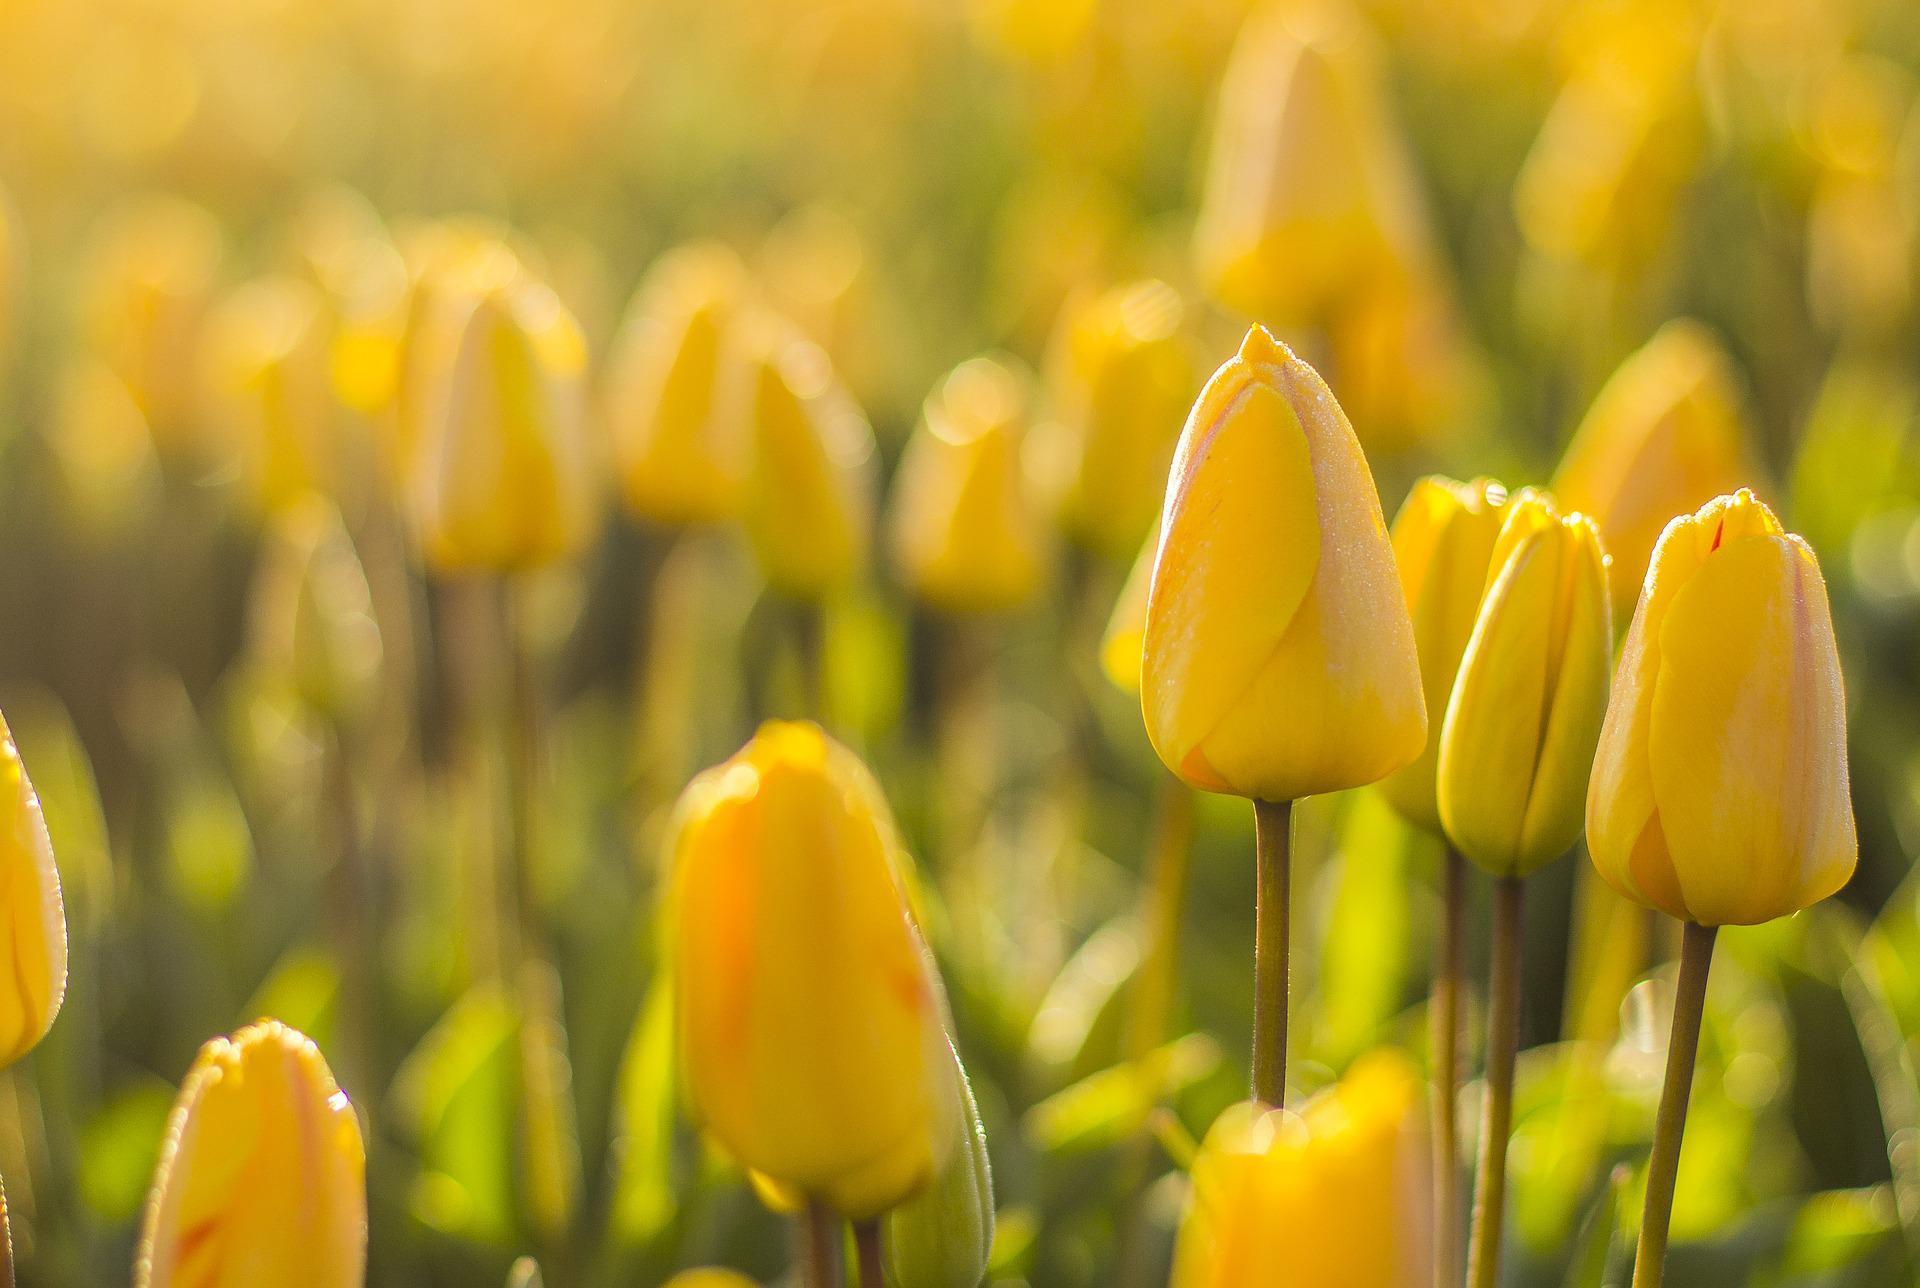 Hình nền hoa tulip vàng sẽ làm cho ngôi nhà bạn thêm phần sinh động và ấm áp. Hãy xem qua những hình ảnh đẹp mắt của hoa tulip vàng để cảm nhận được sự ấm áp và xinh đẹp của nó.